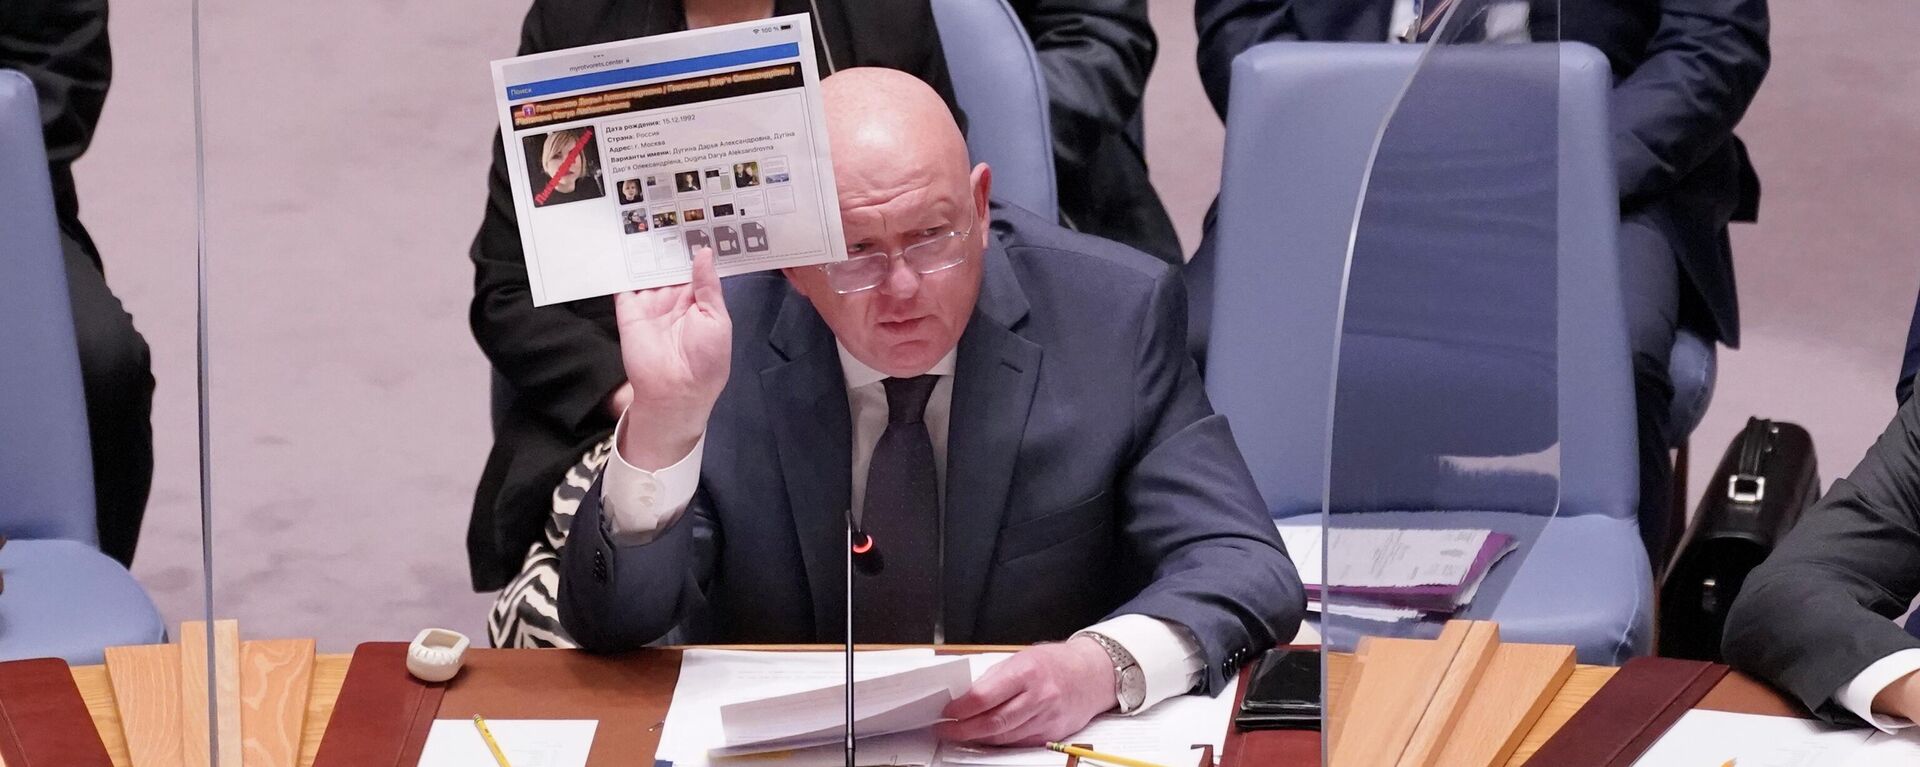 El representante permanente de Rusia ante las Naciones Unidas, Vasili Nebenzia, sostiene una foto de Darya Dugina durante una reunión del Consejo de Seguridad sobre las amenazas a la paz y la seguridad internacionales en la sede de las Naciones Unidas. - Sputnik Mundo, 1920, 28.03.2023